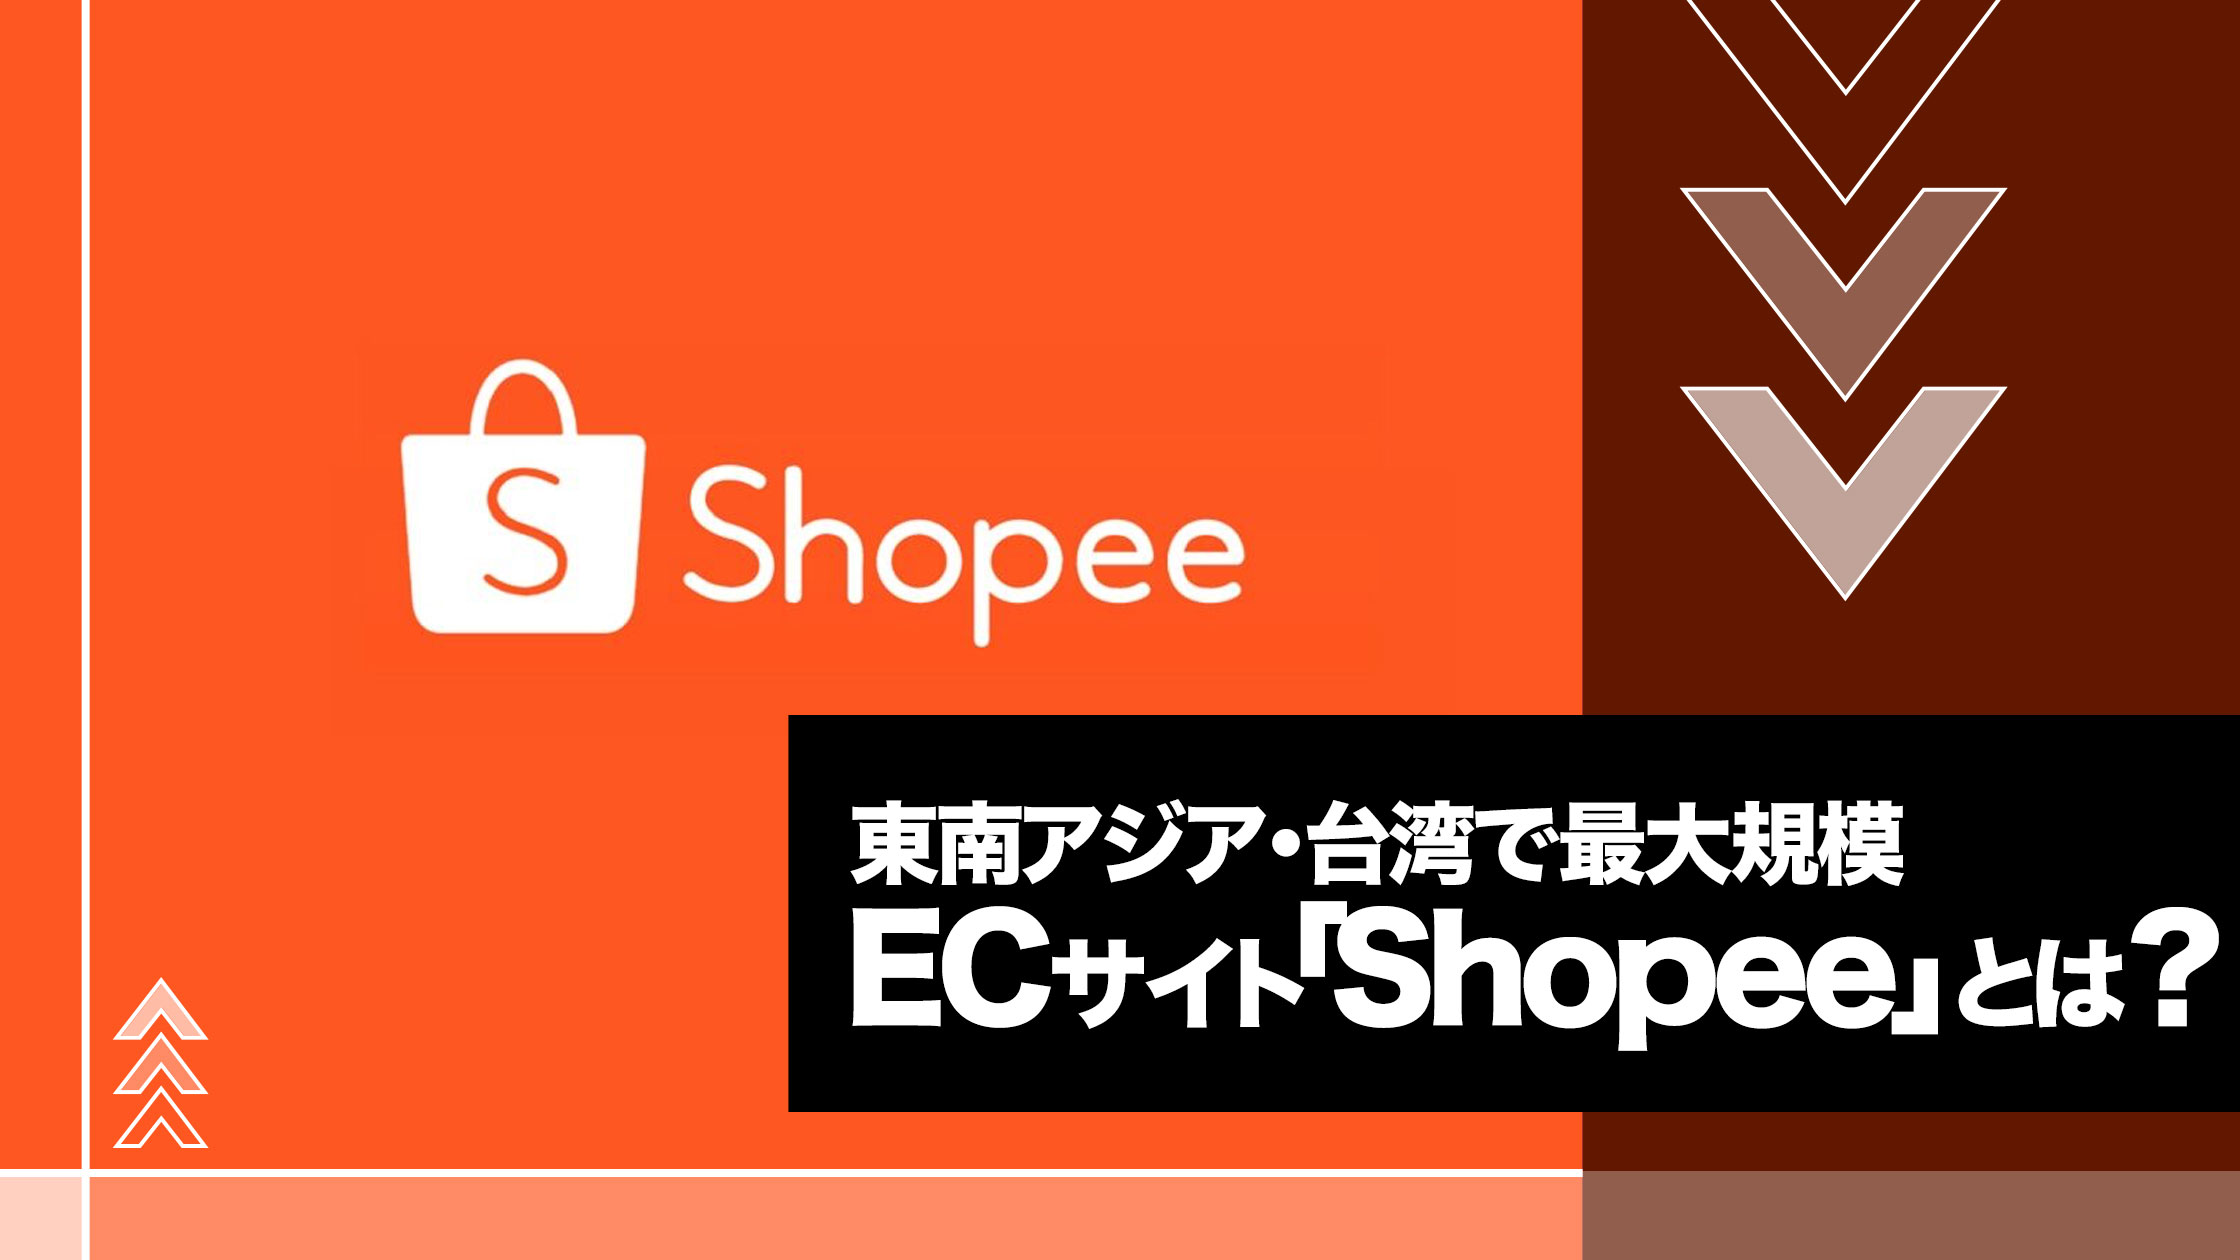 ECサイト「Shopee」とは？